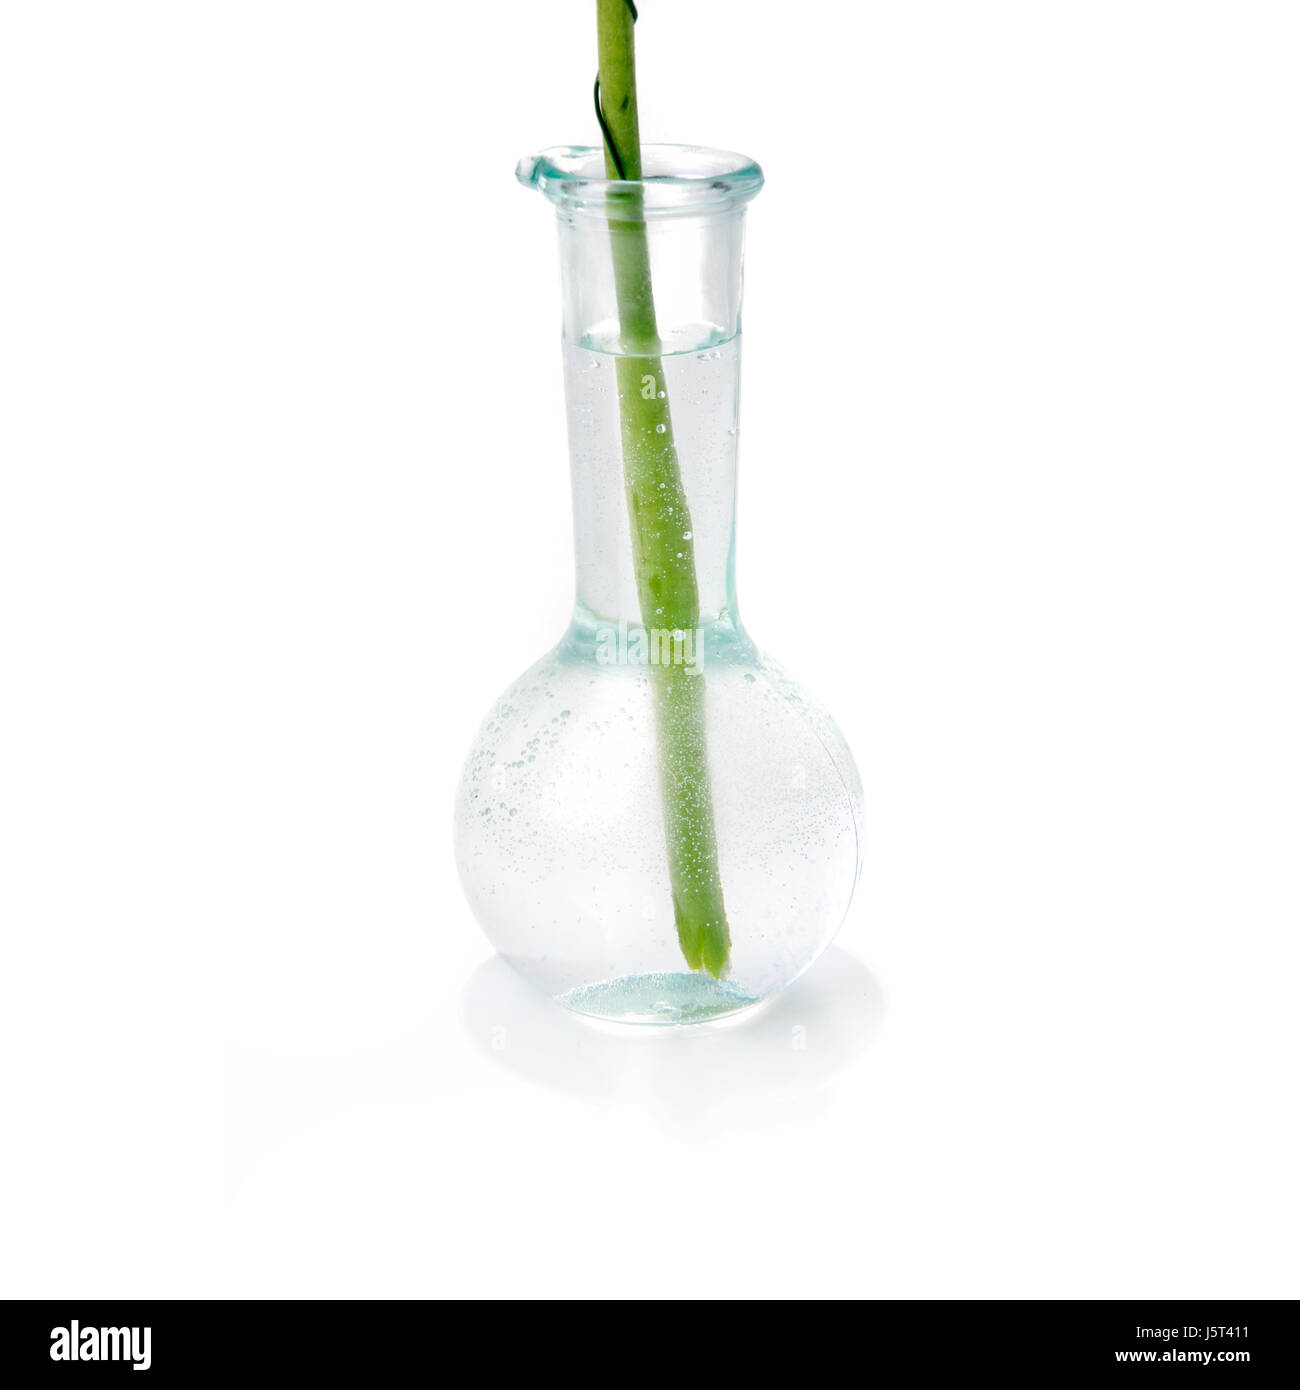 Style de l'institution moderne de la modernité de l'objet vase verre fleur plante printemps Banque D'Images